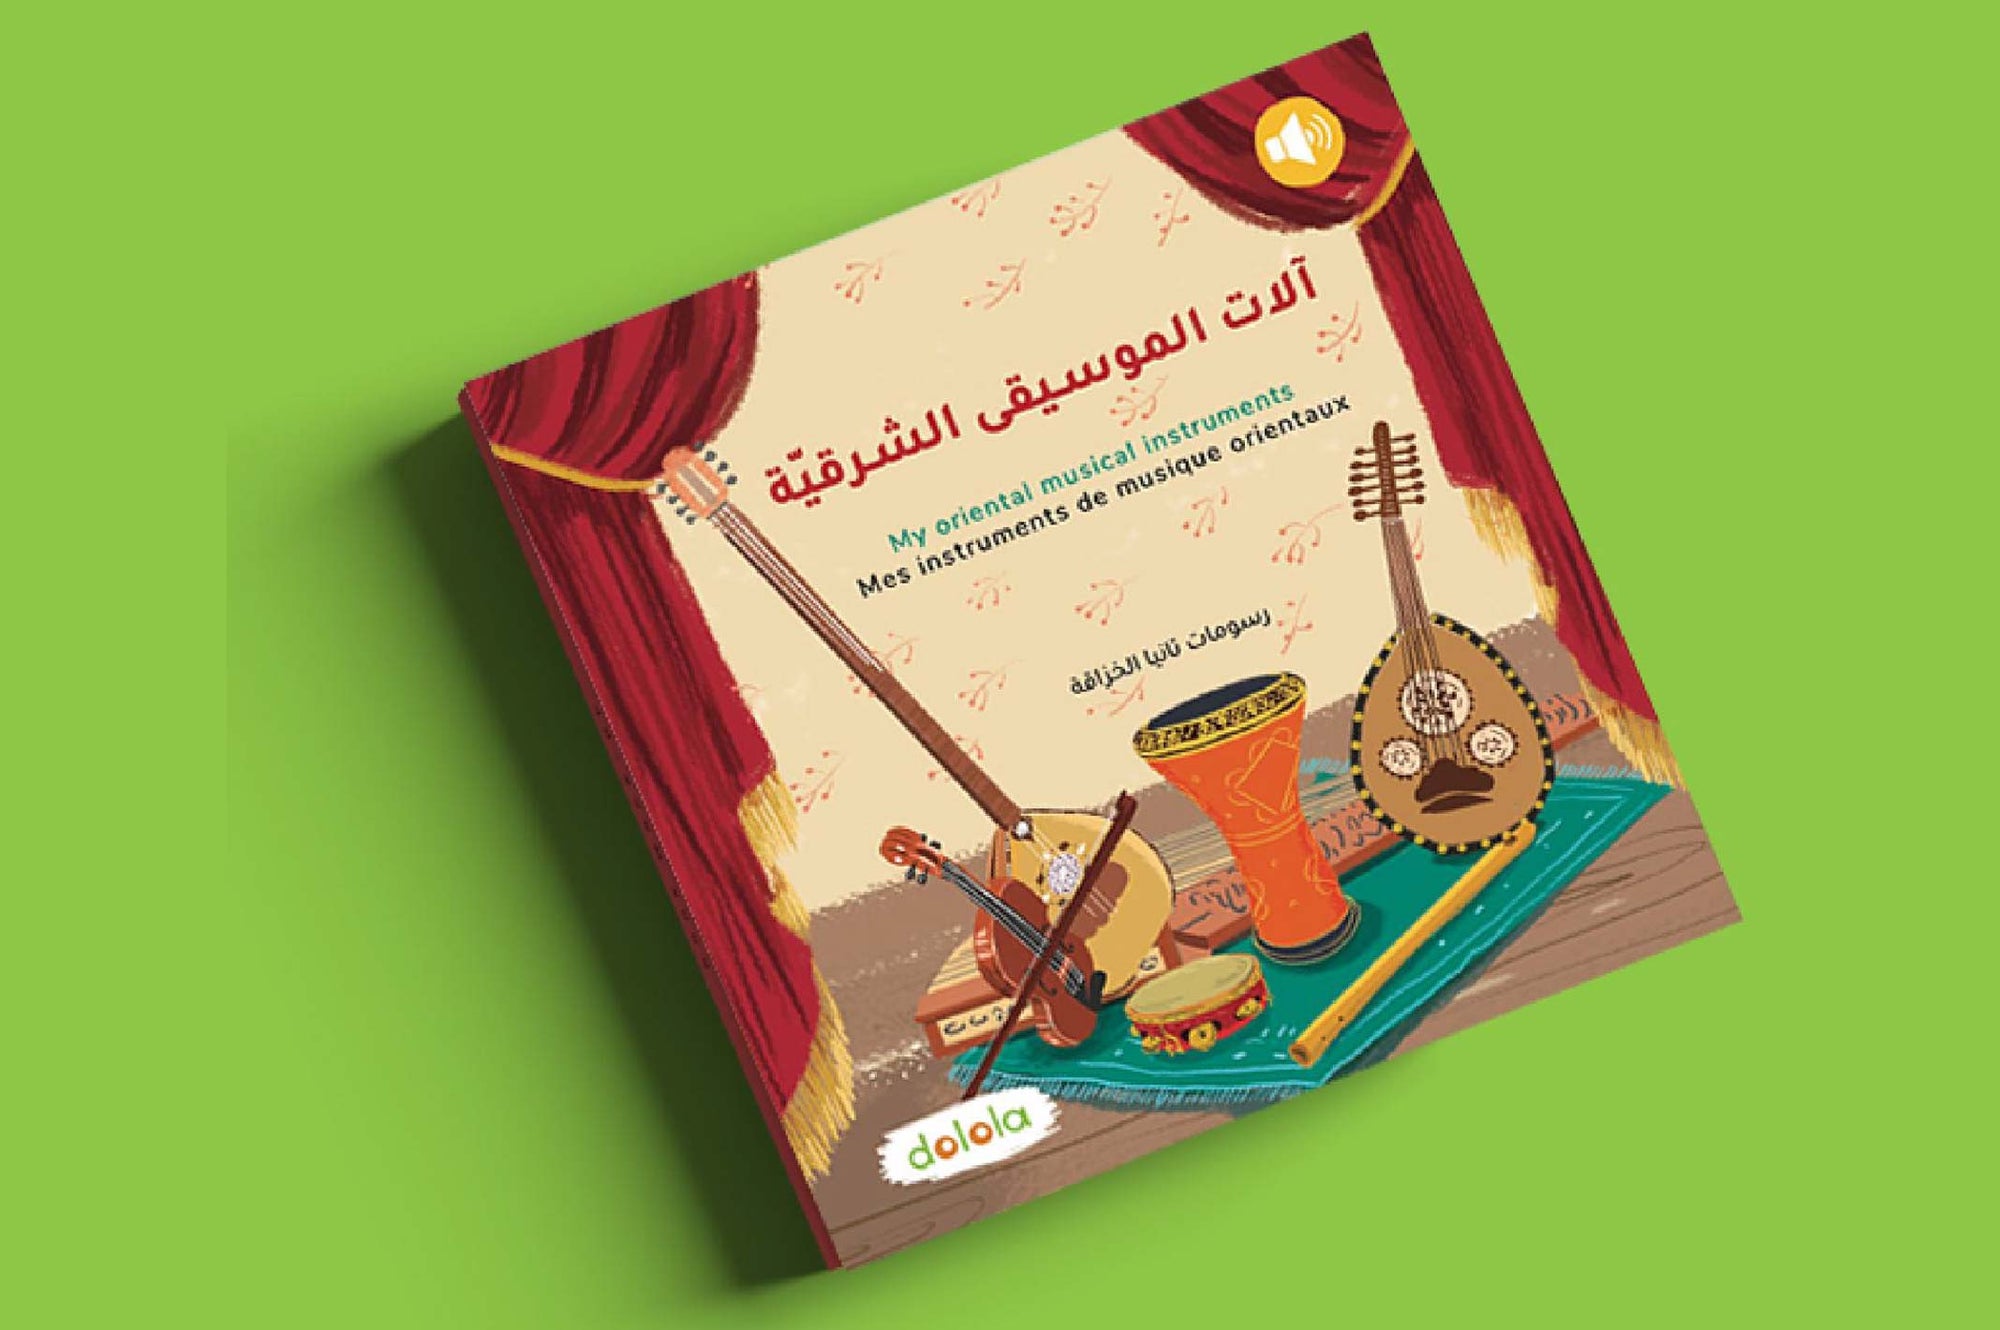 My oriental musical instruments - SOUND BOOK